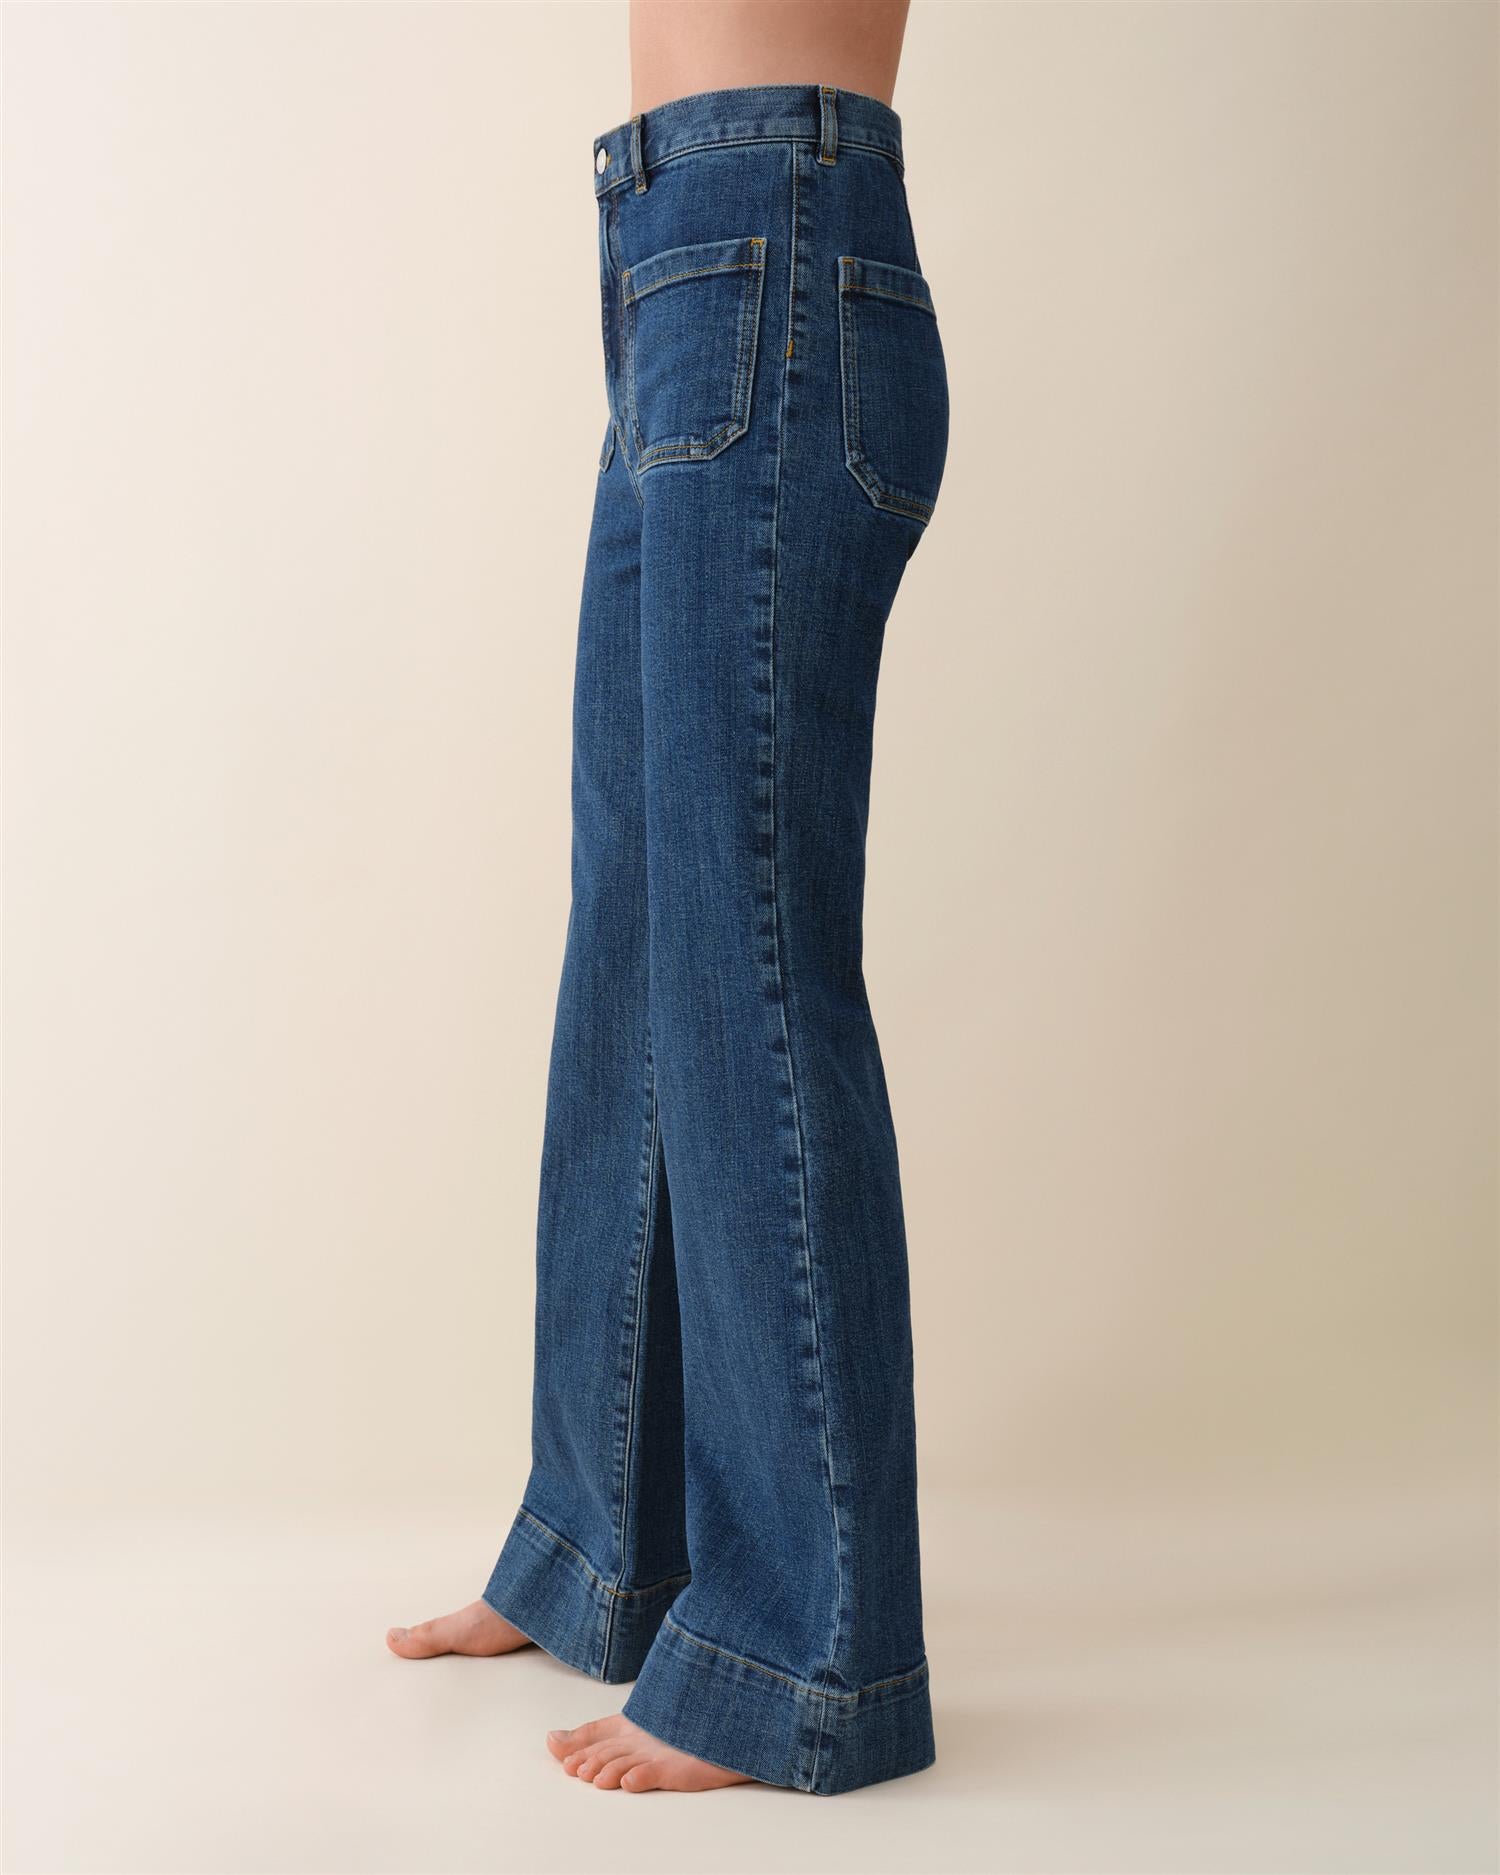 St Monica Jeans Vintage 95